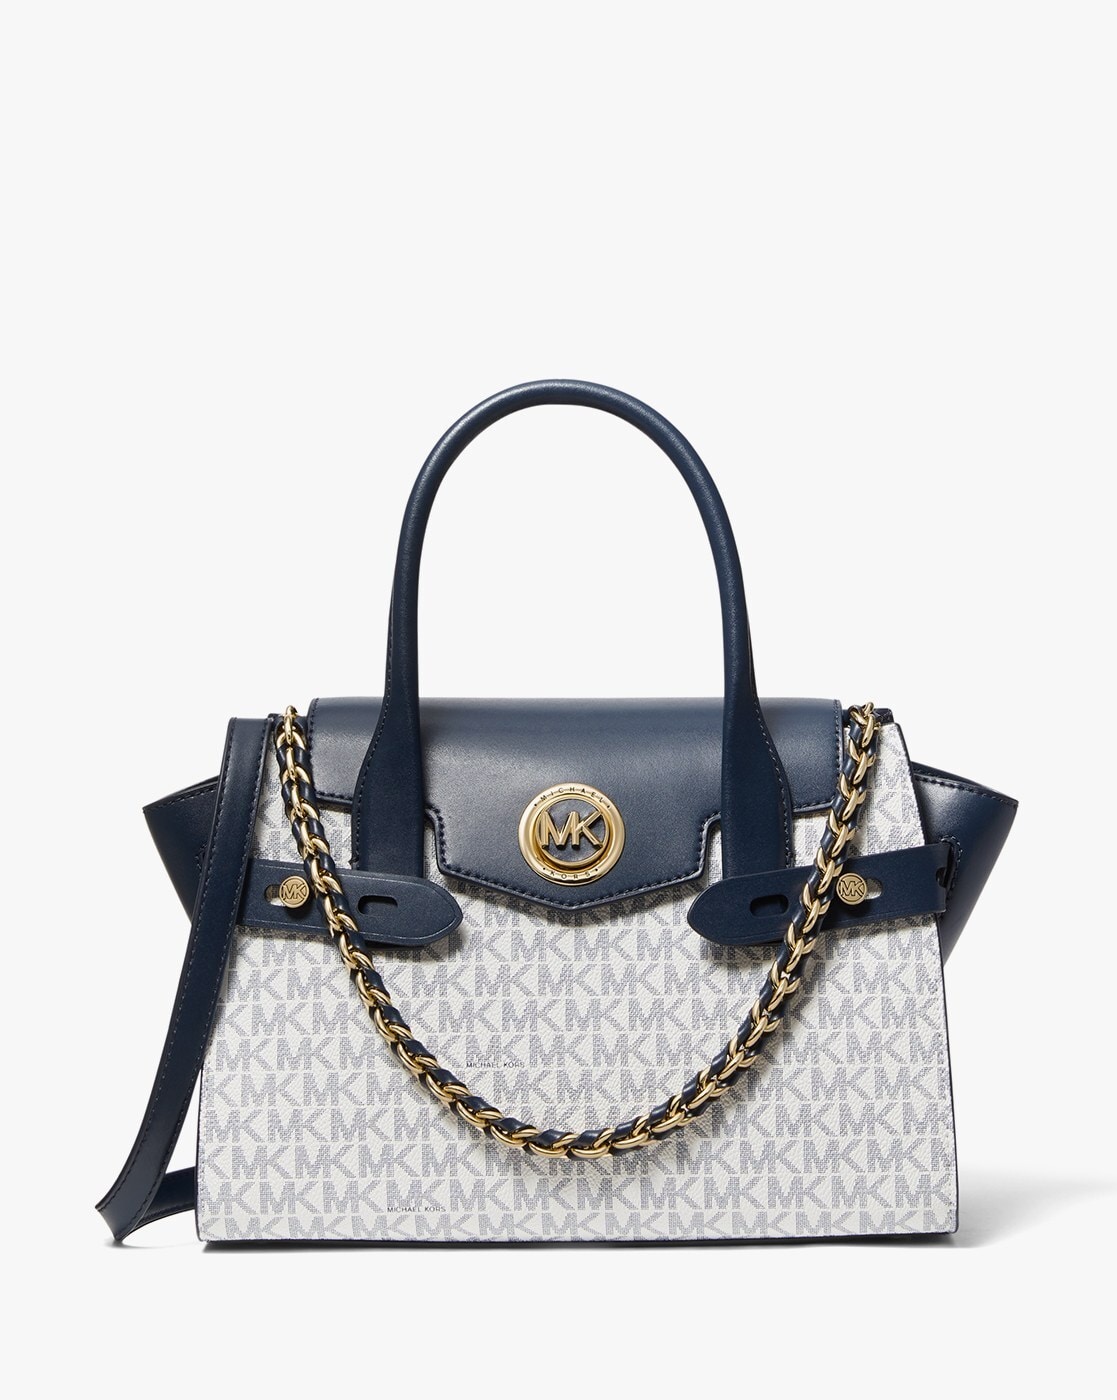 Buy White & Navy Blue Handbags for Women by Michael Kors Online 